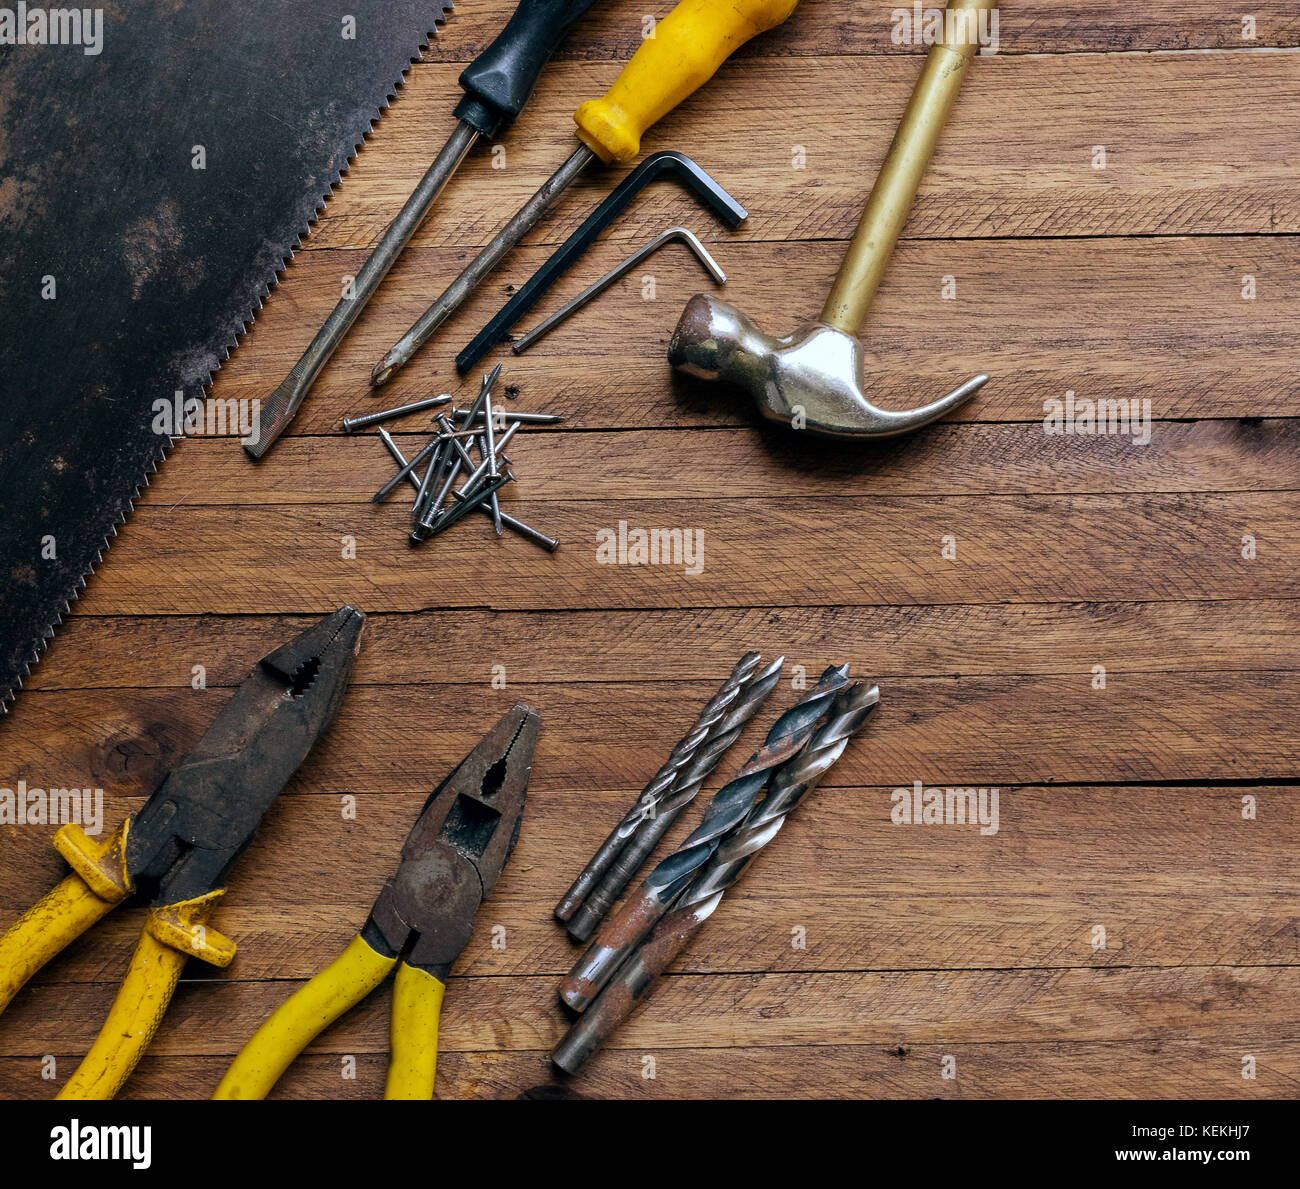 Rusty et ancien utilisé en menuiserie et en outils de garage sur un fond de bois brun clair, montrant des outils variés,avec une pince métallique et forets,metal,hammer Banque D'Images